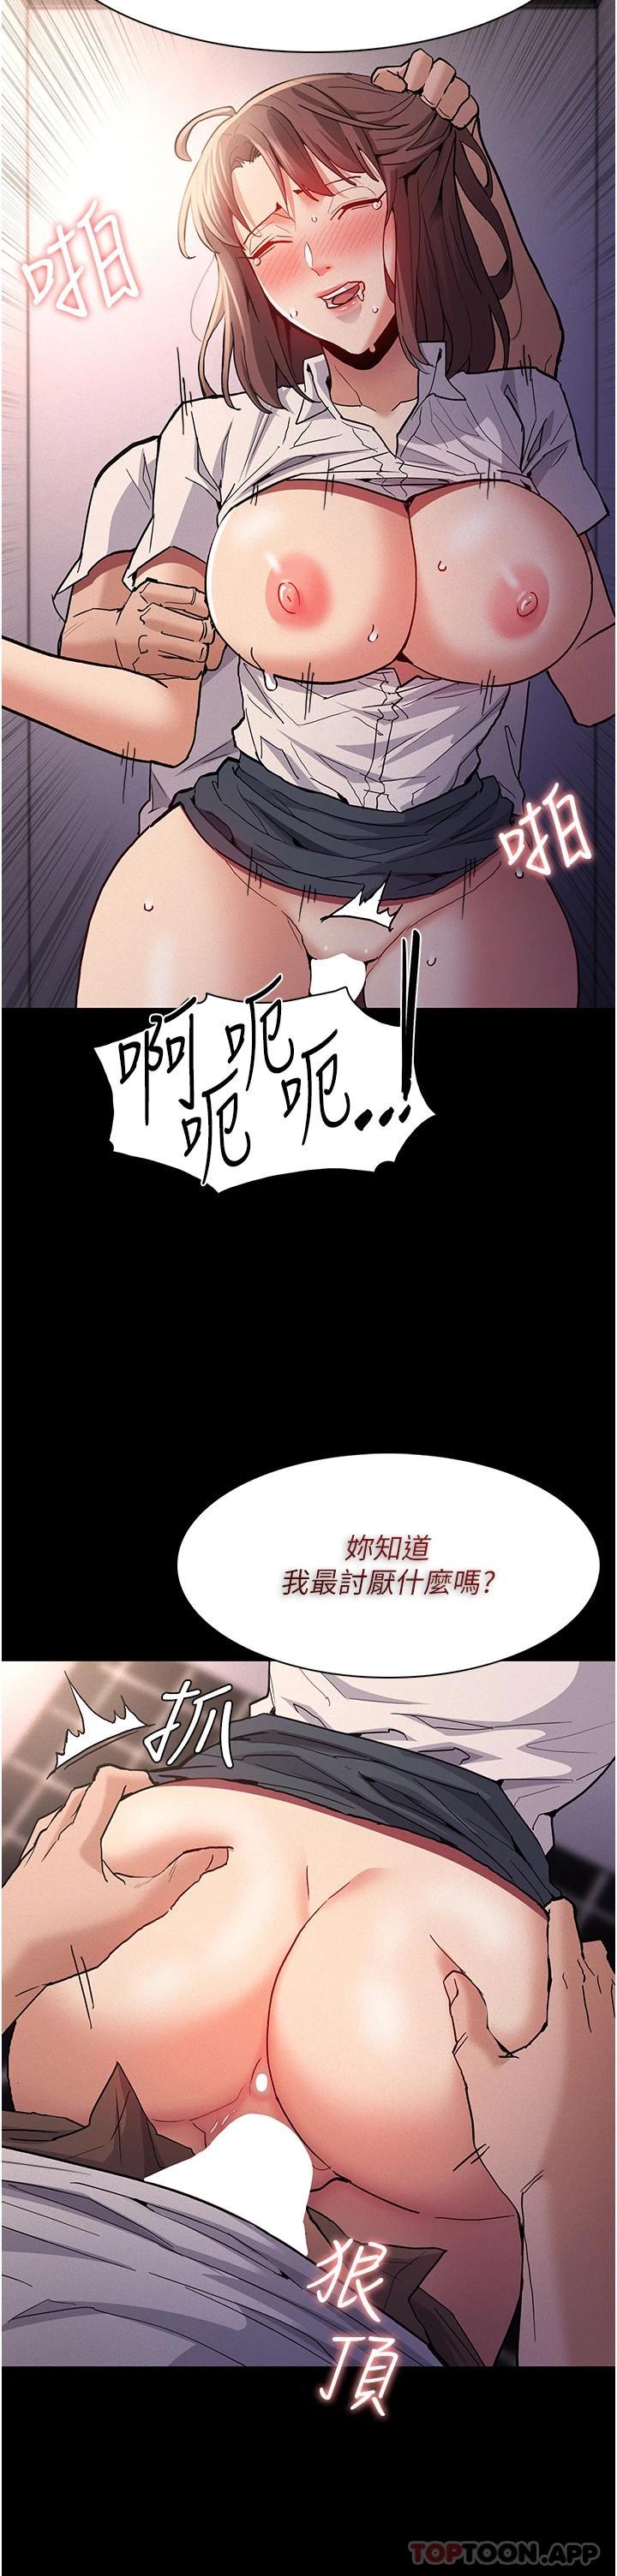 韩国污漫画 癡漢成癮 第26话-被主人抛弃的母狗 12